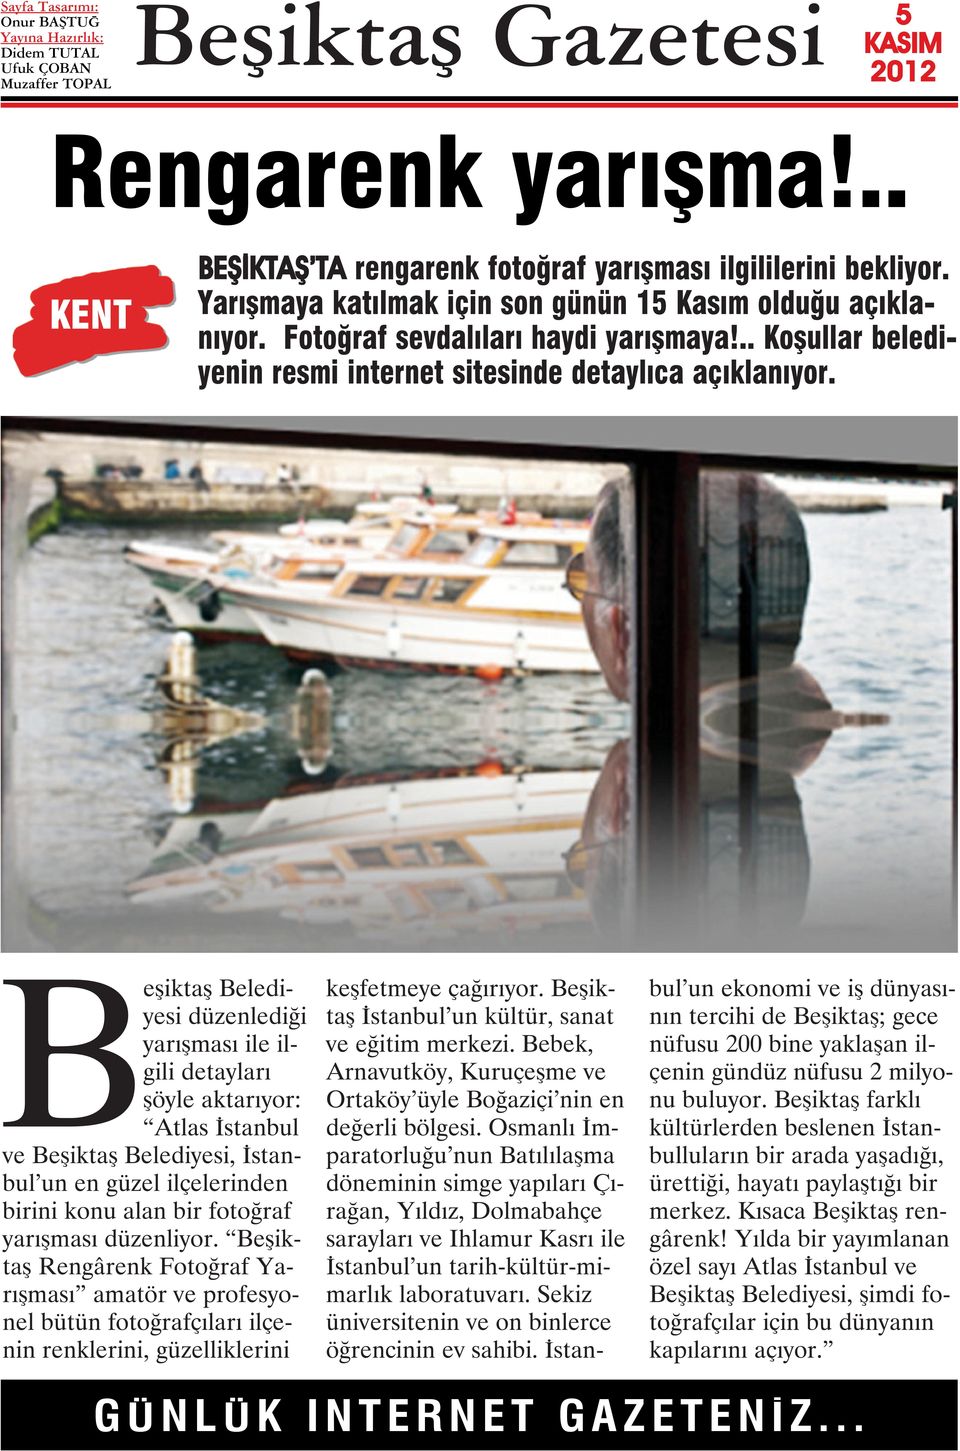 Beşiktaş Belediyesi düzenlediği yarışması ile ilgili detayları şöyle aktarıyor: Atlas İstanbul ve Beşiktaş Belediyesi, İstanbul un en güzel ilçelerinden birini konu alan bir fotoğraf yarışması